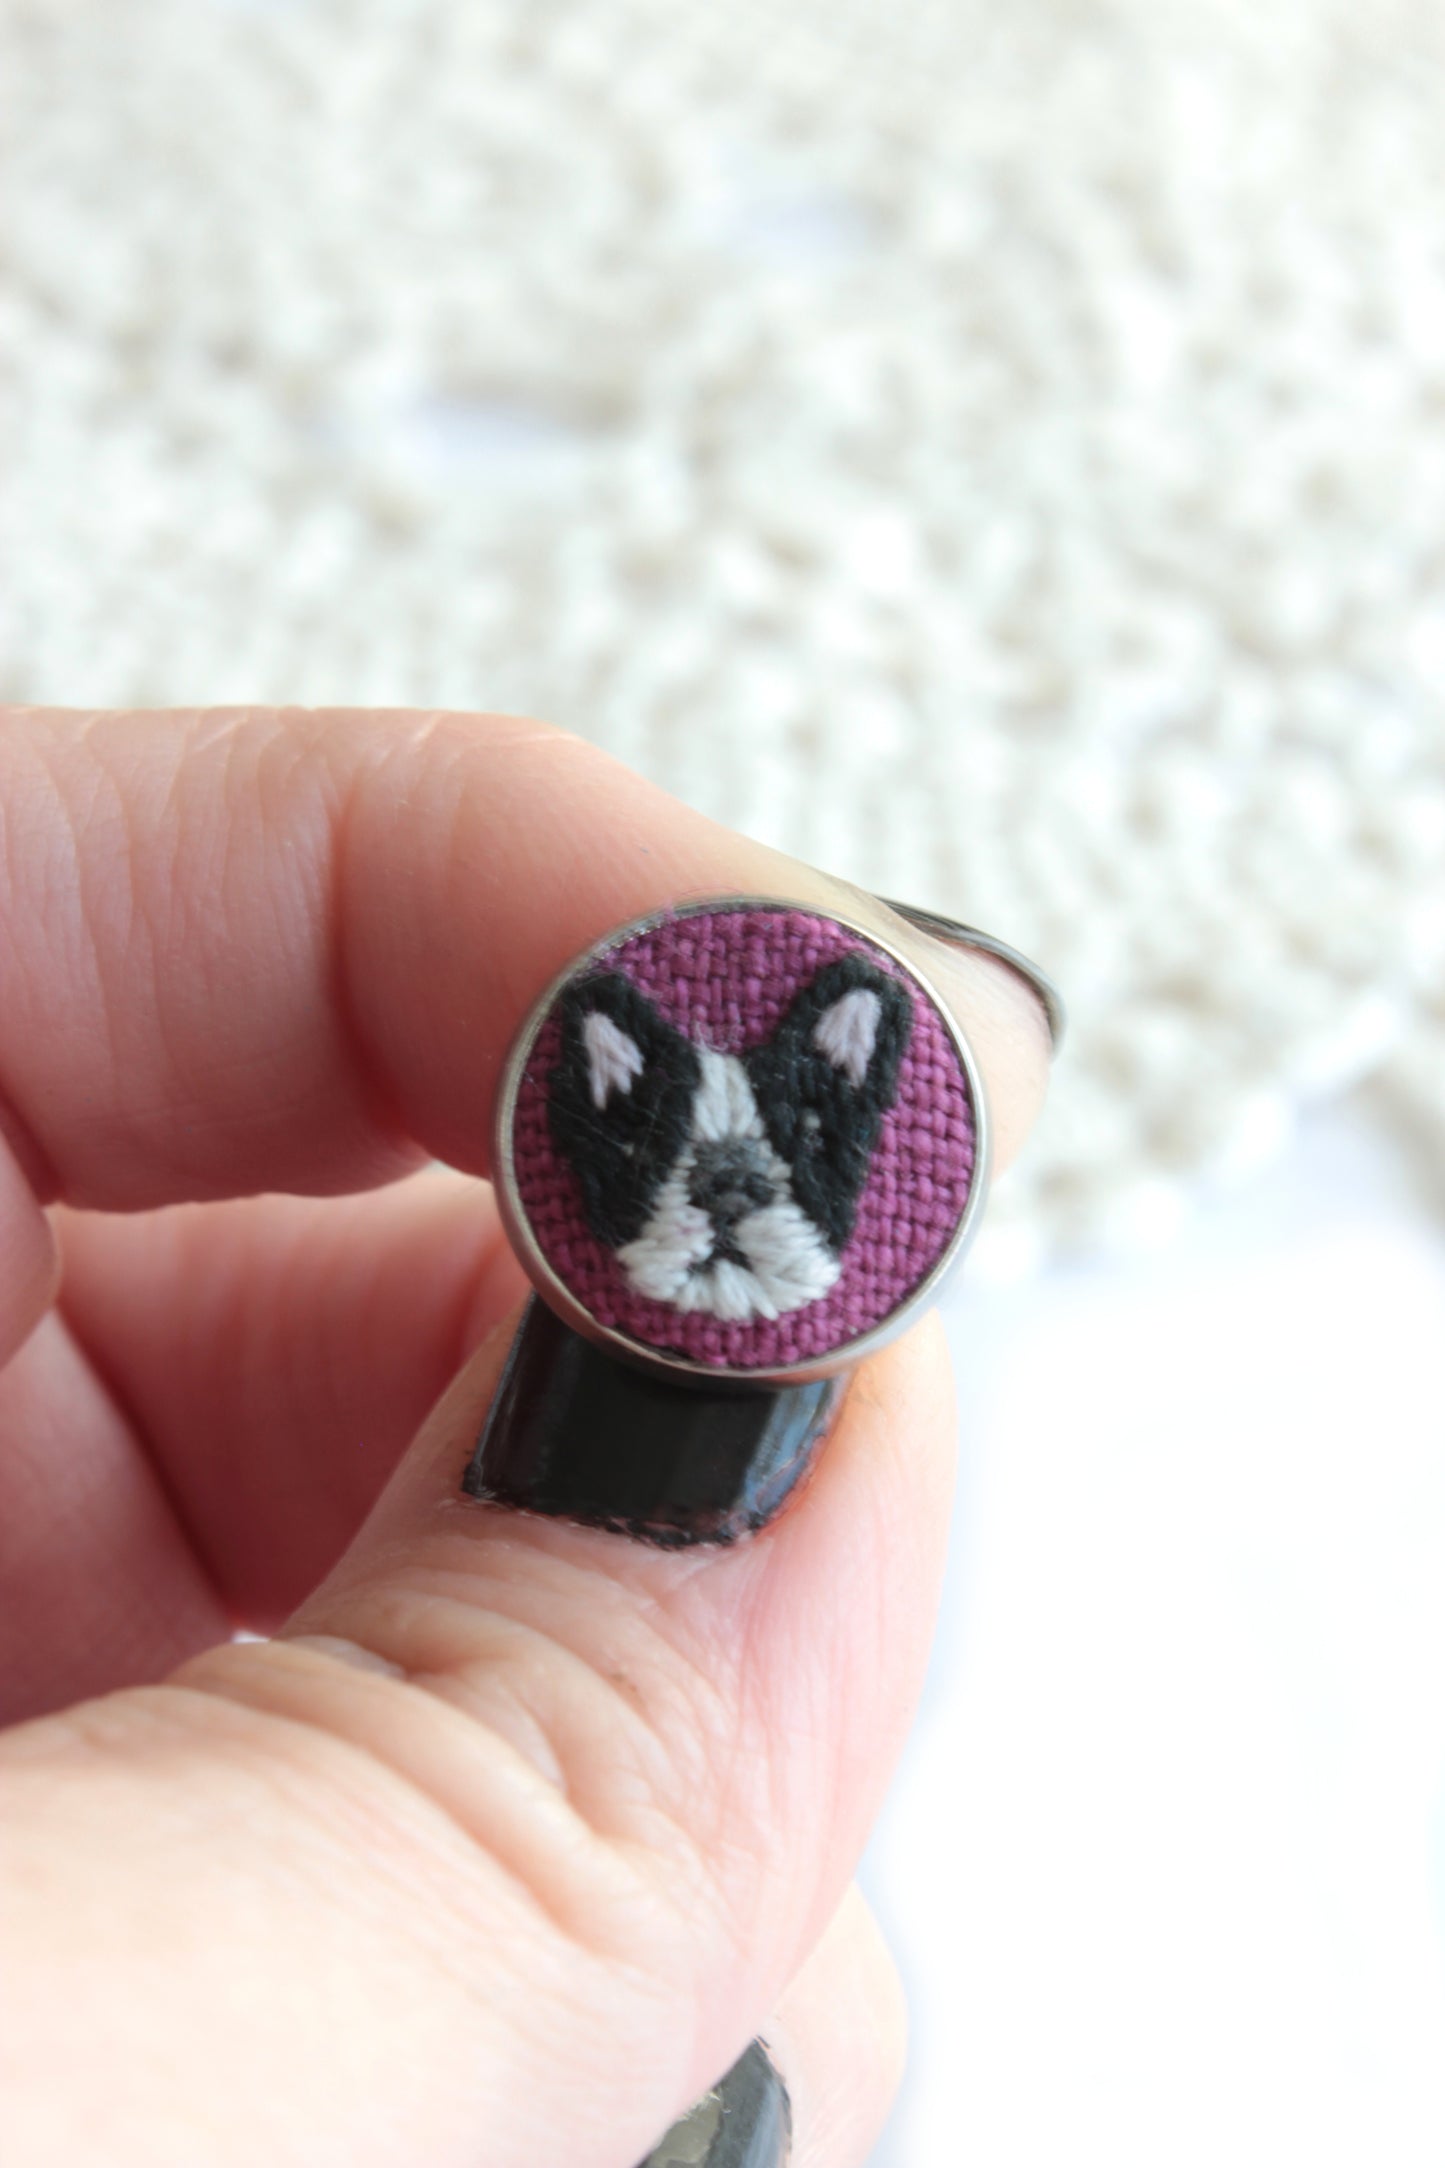 Embroidery Boston Terrier Studs Earrings